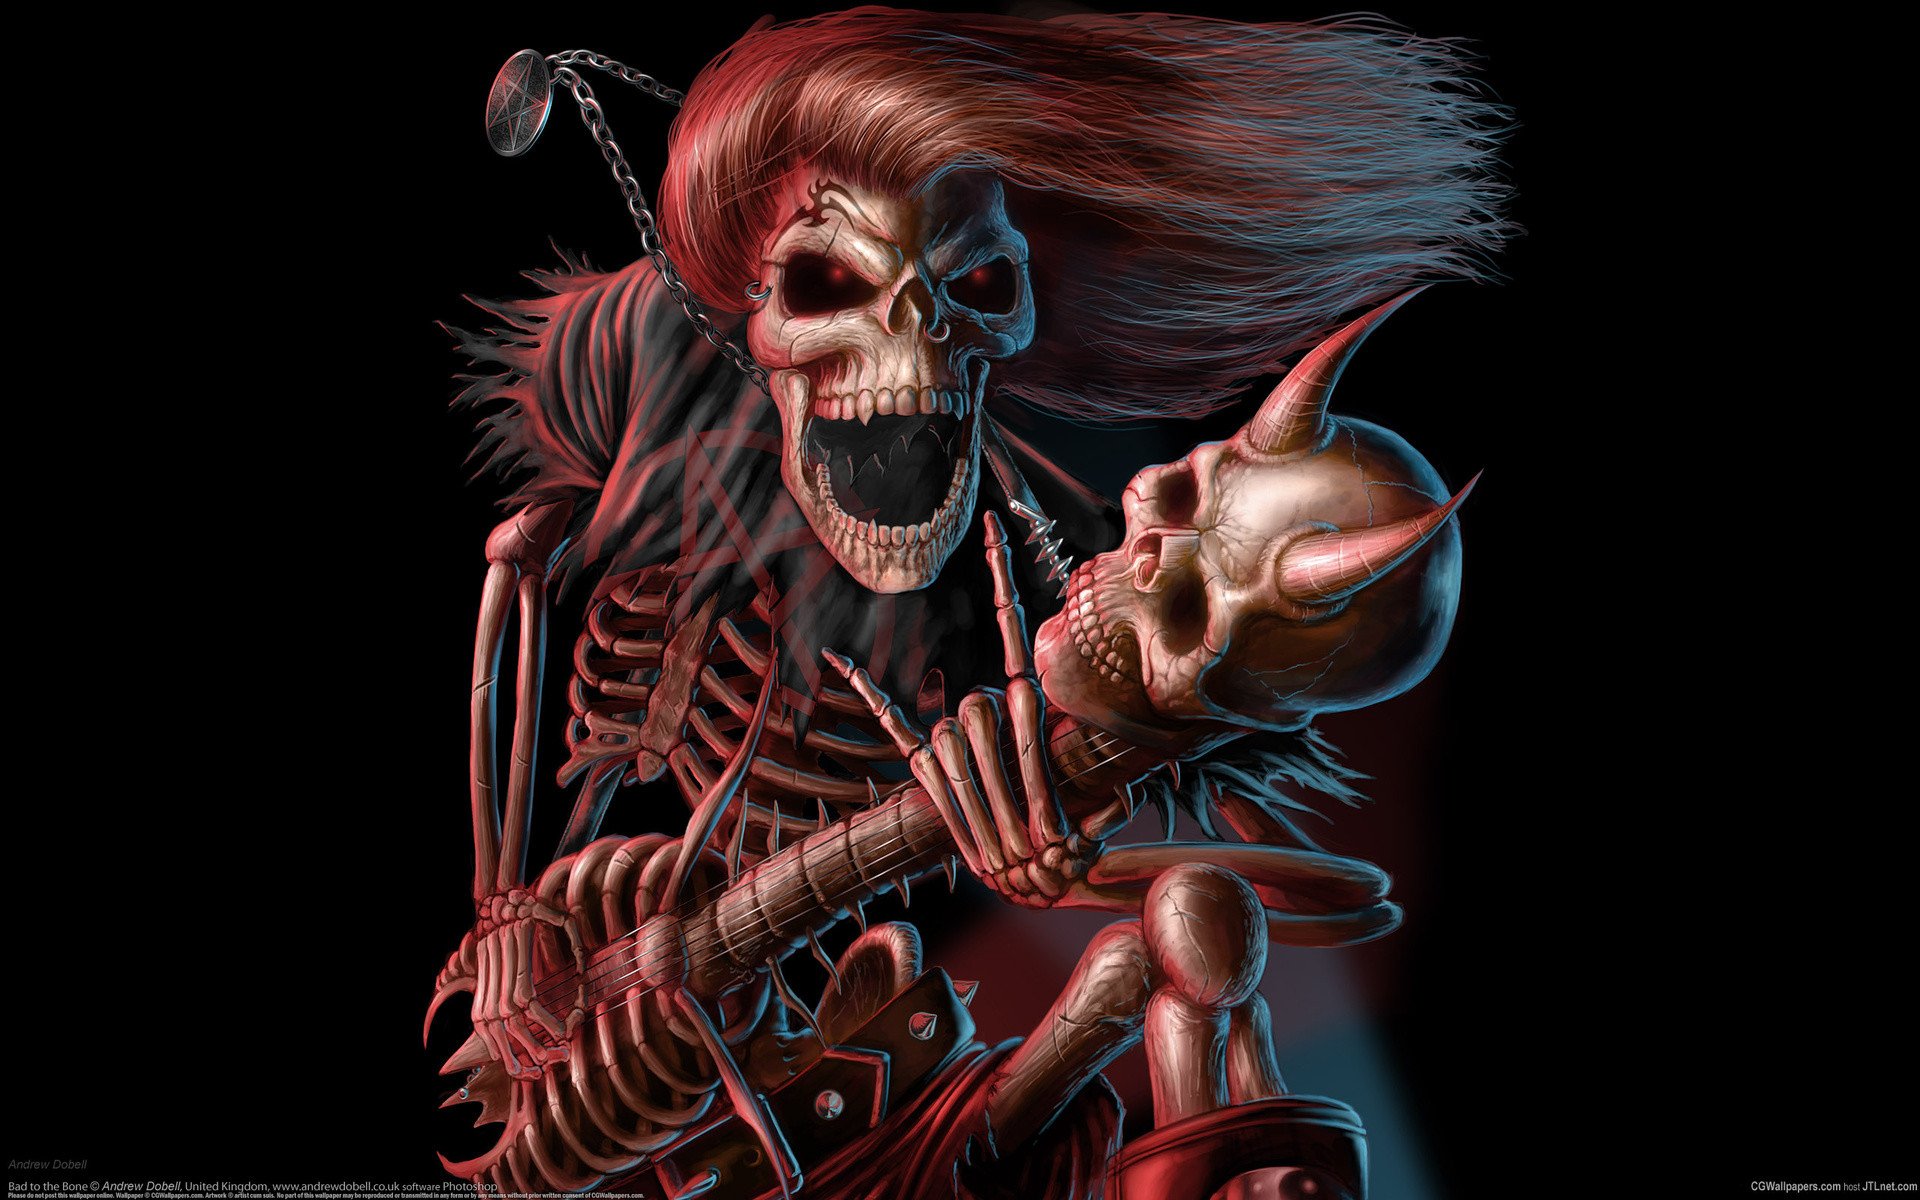 Dark music reaper skeleton skull guitars evil scary spooky halloween horns fantasy bones scream smile grimace wallpaper